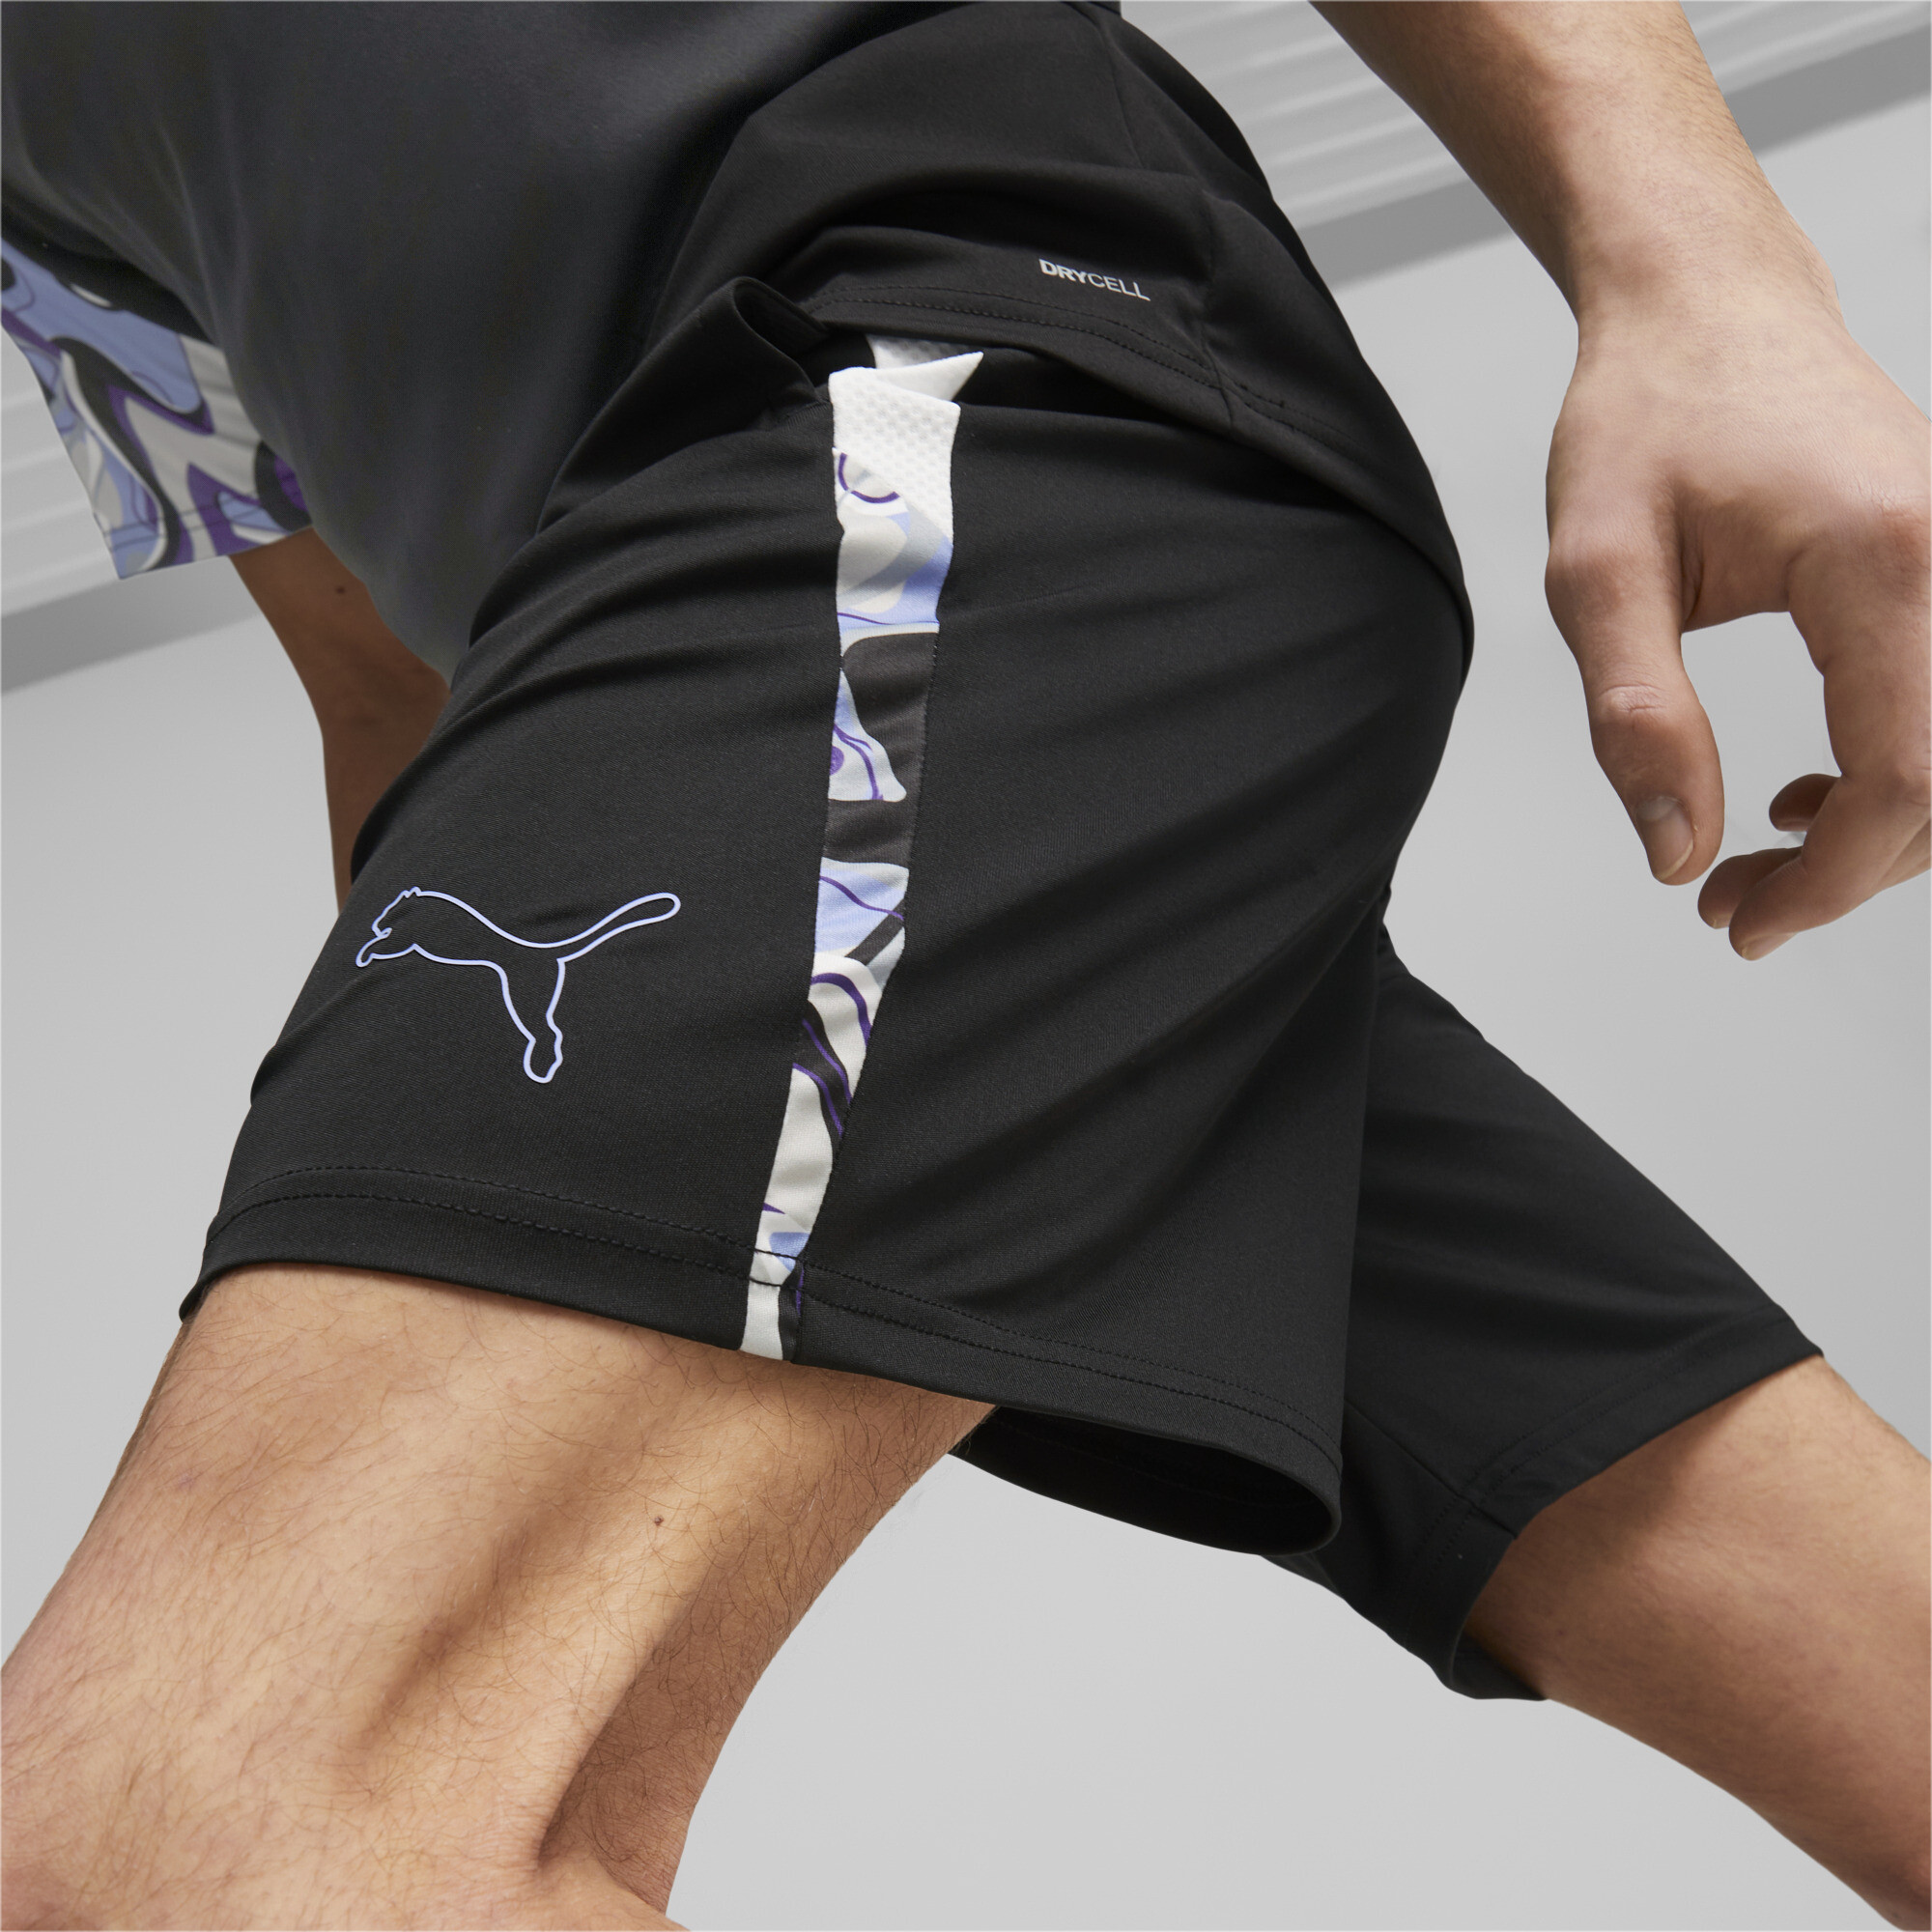 Men's Puma Neymar Jr Creativity Football Shorts, Black, Size XXL, Clothing